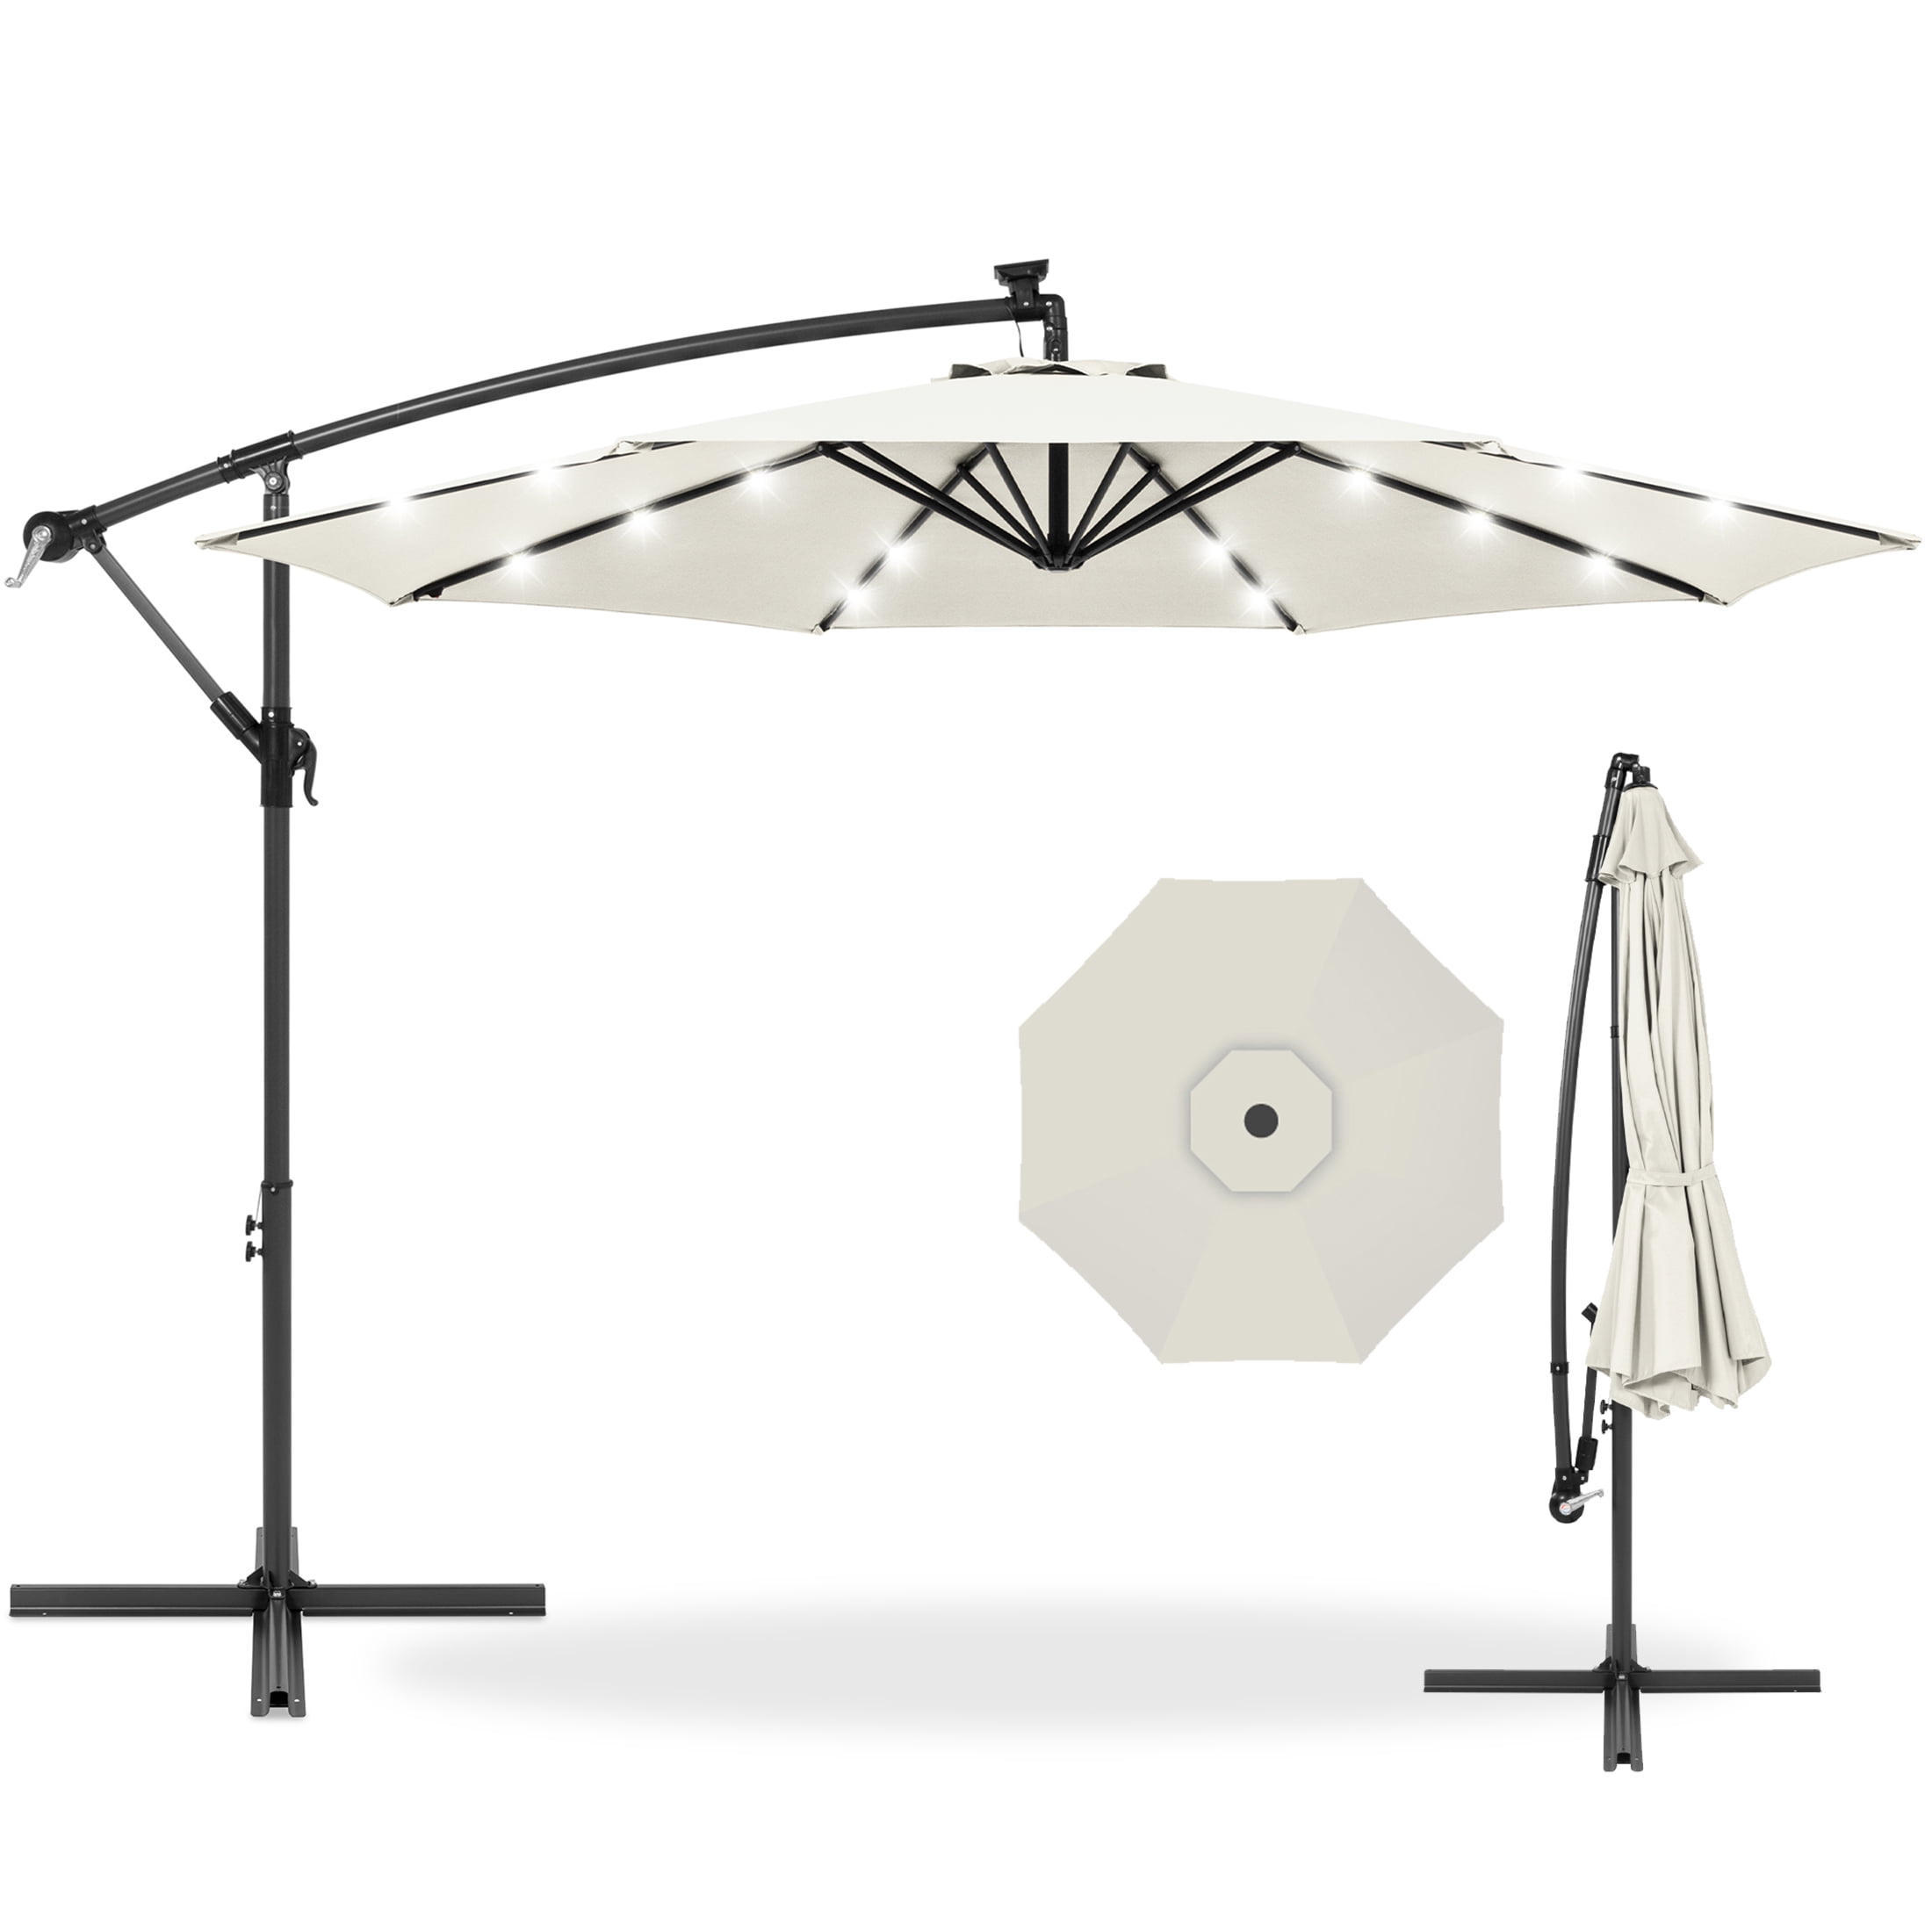 10ft Solar LED Offset Hanging Outdoor Market Patio Umbrella w/Easy Tilt Adjust 